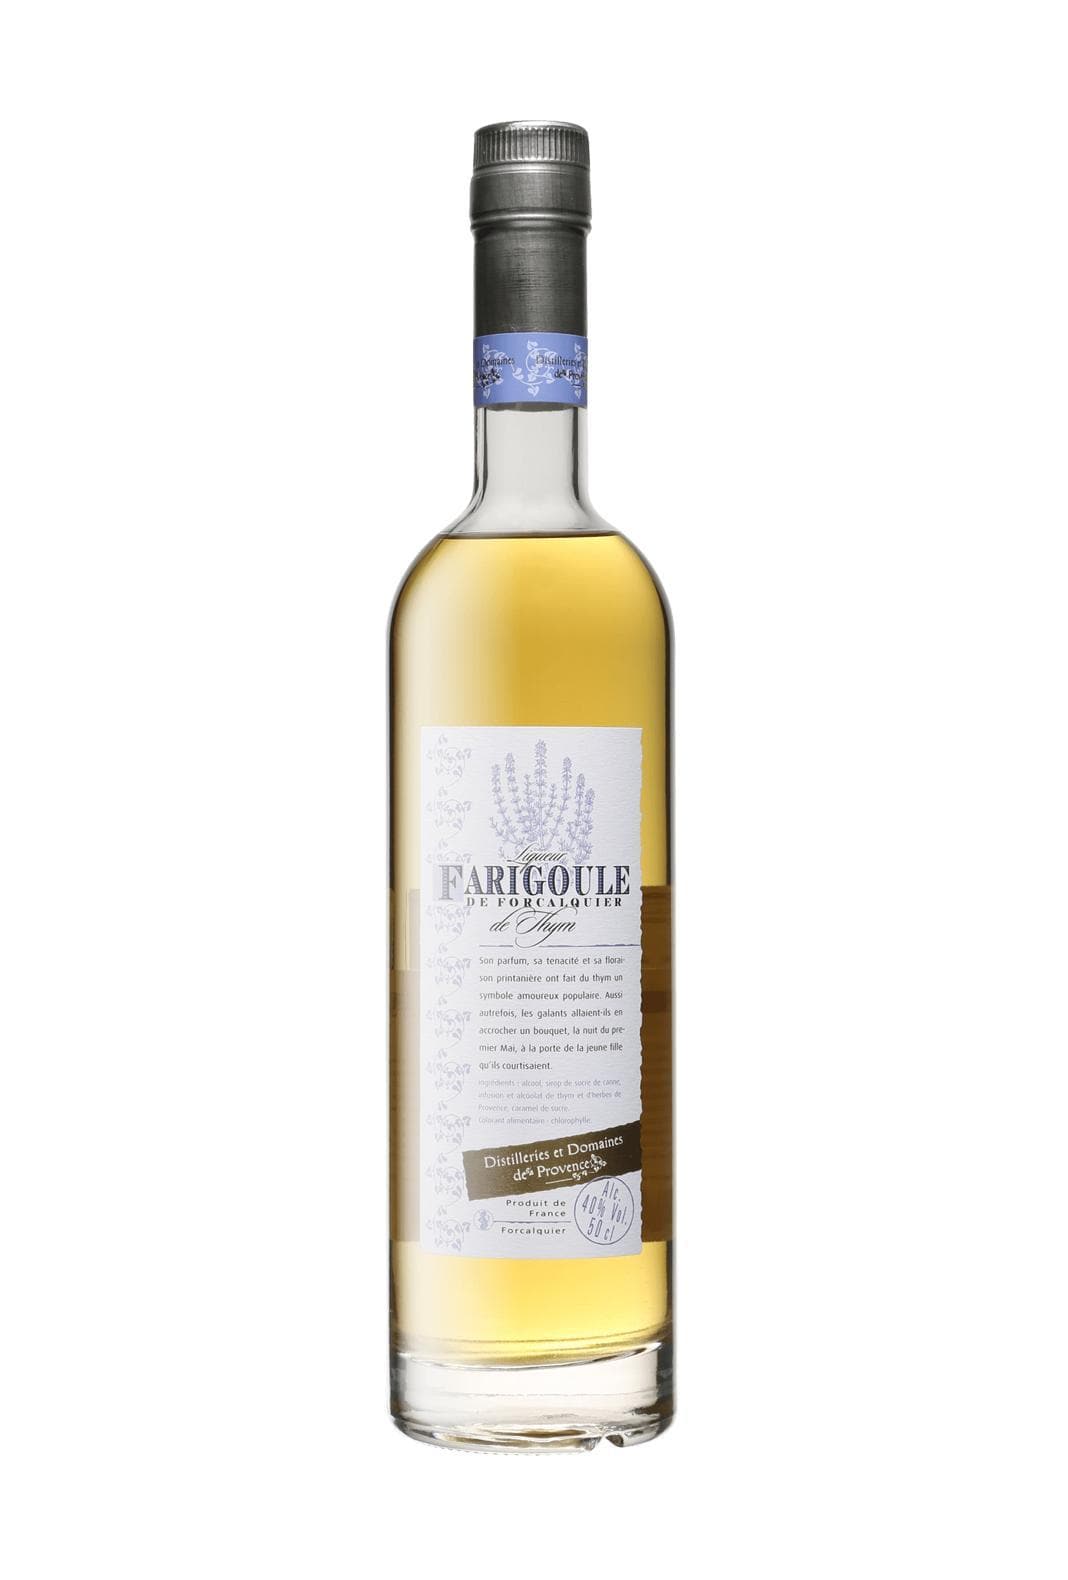 Distillerie et Domaines de Provence Farigoule (Thyme) Liqueur 40% 500ml | Liqueurs | Shop online at Spirits of France